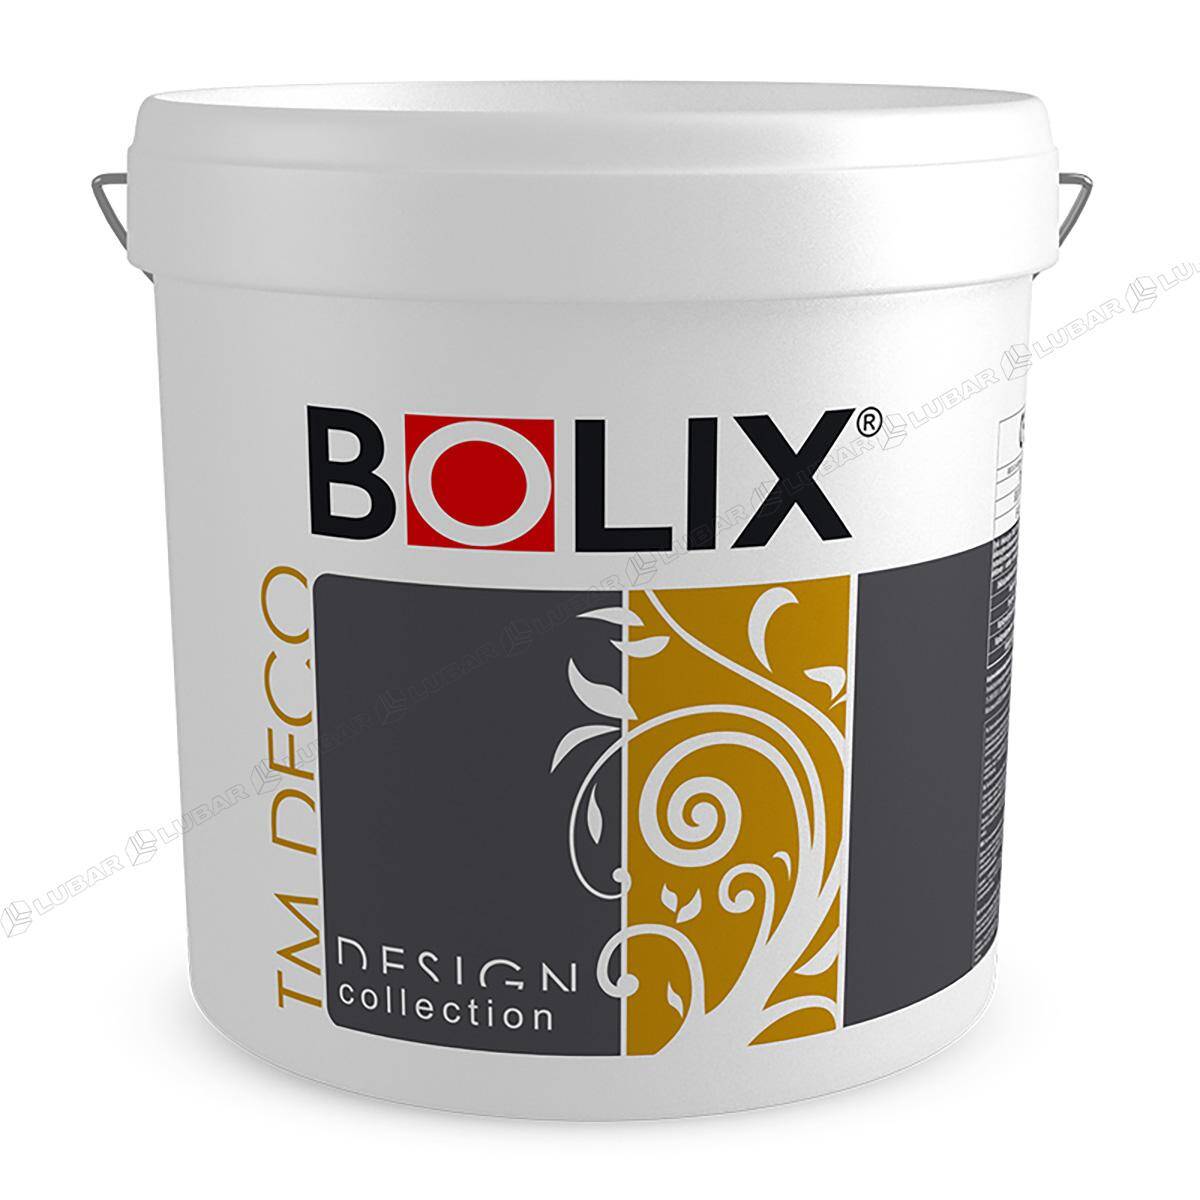 BOLIX TM DECO Tynk dekoracyjny z miką 25 kg DARK SIDE TMD12